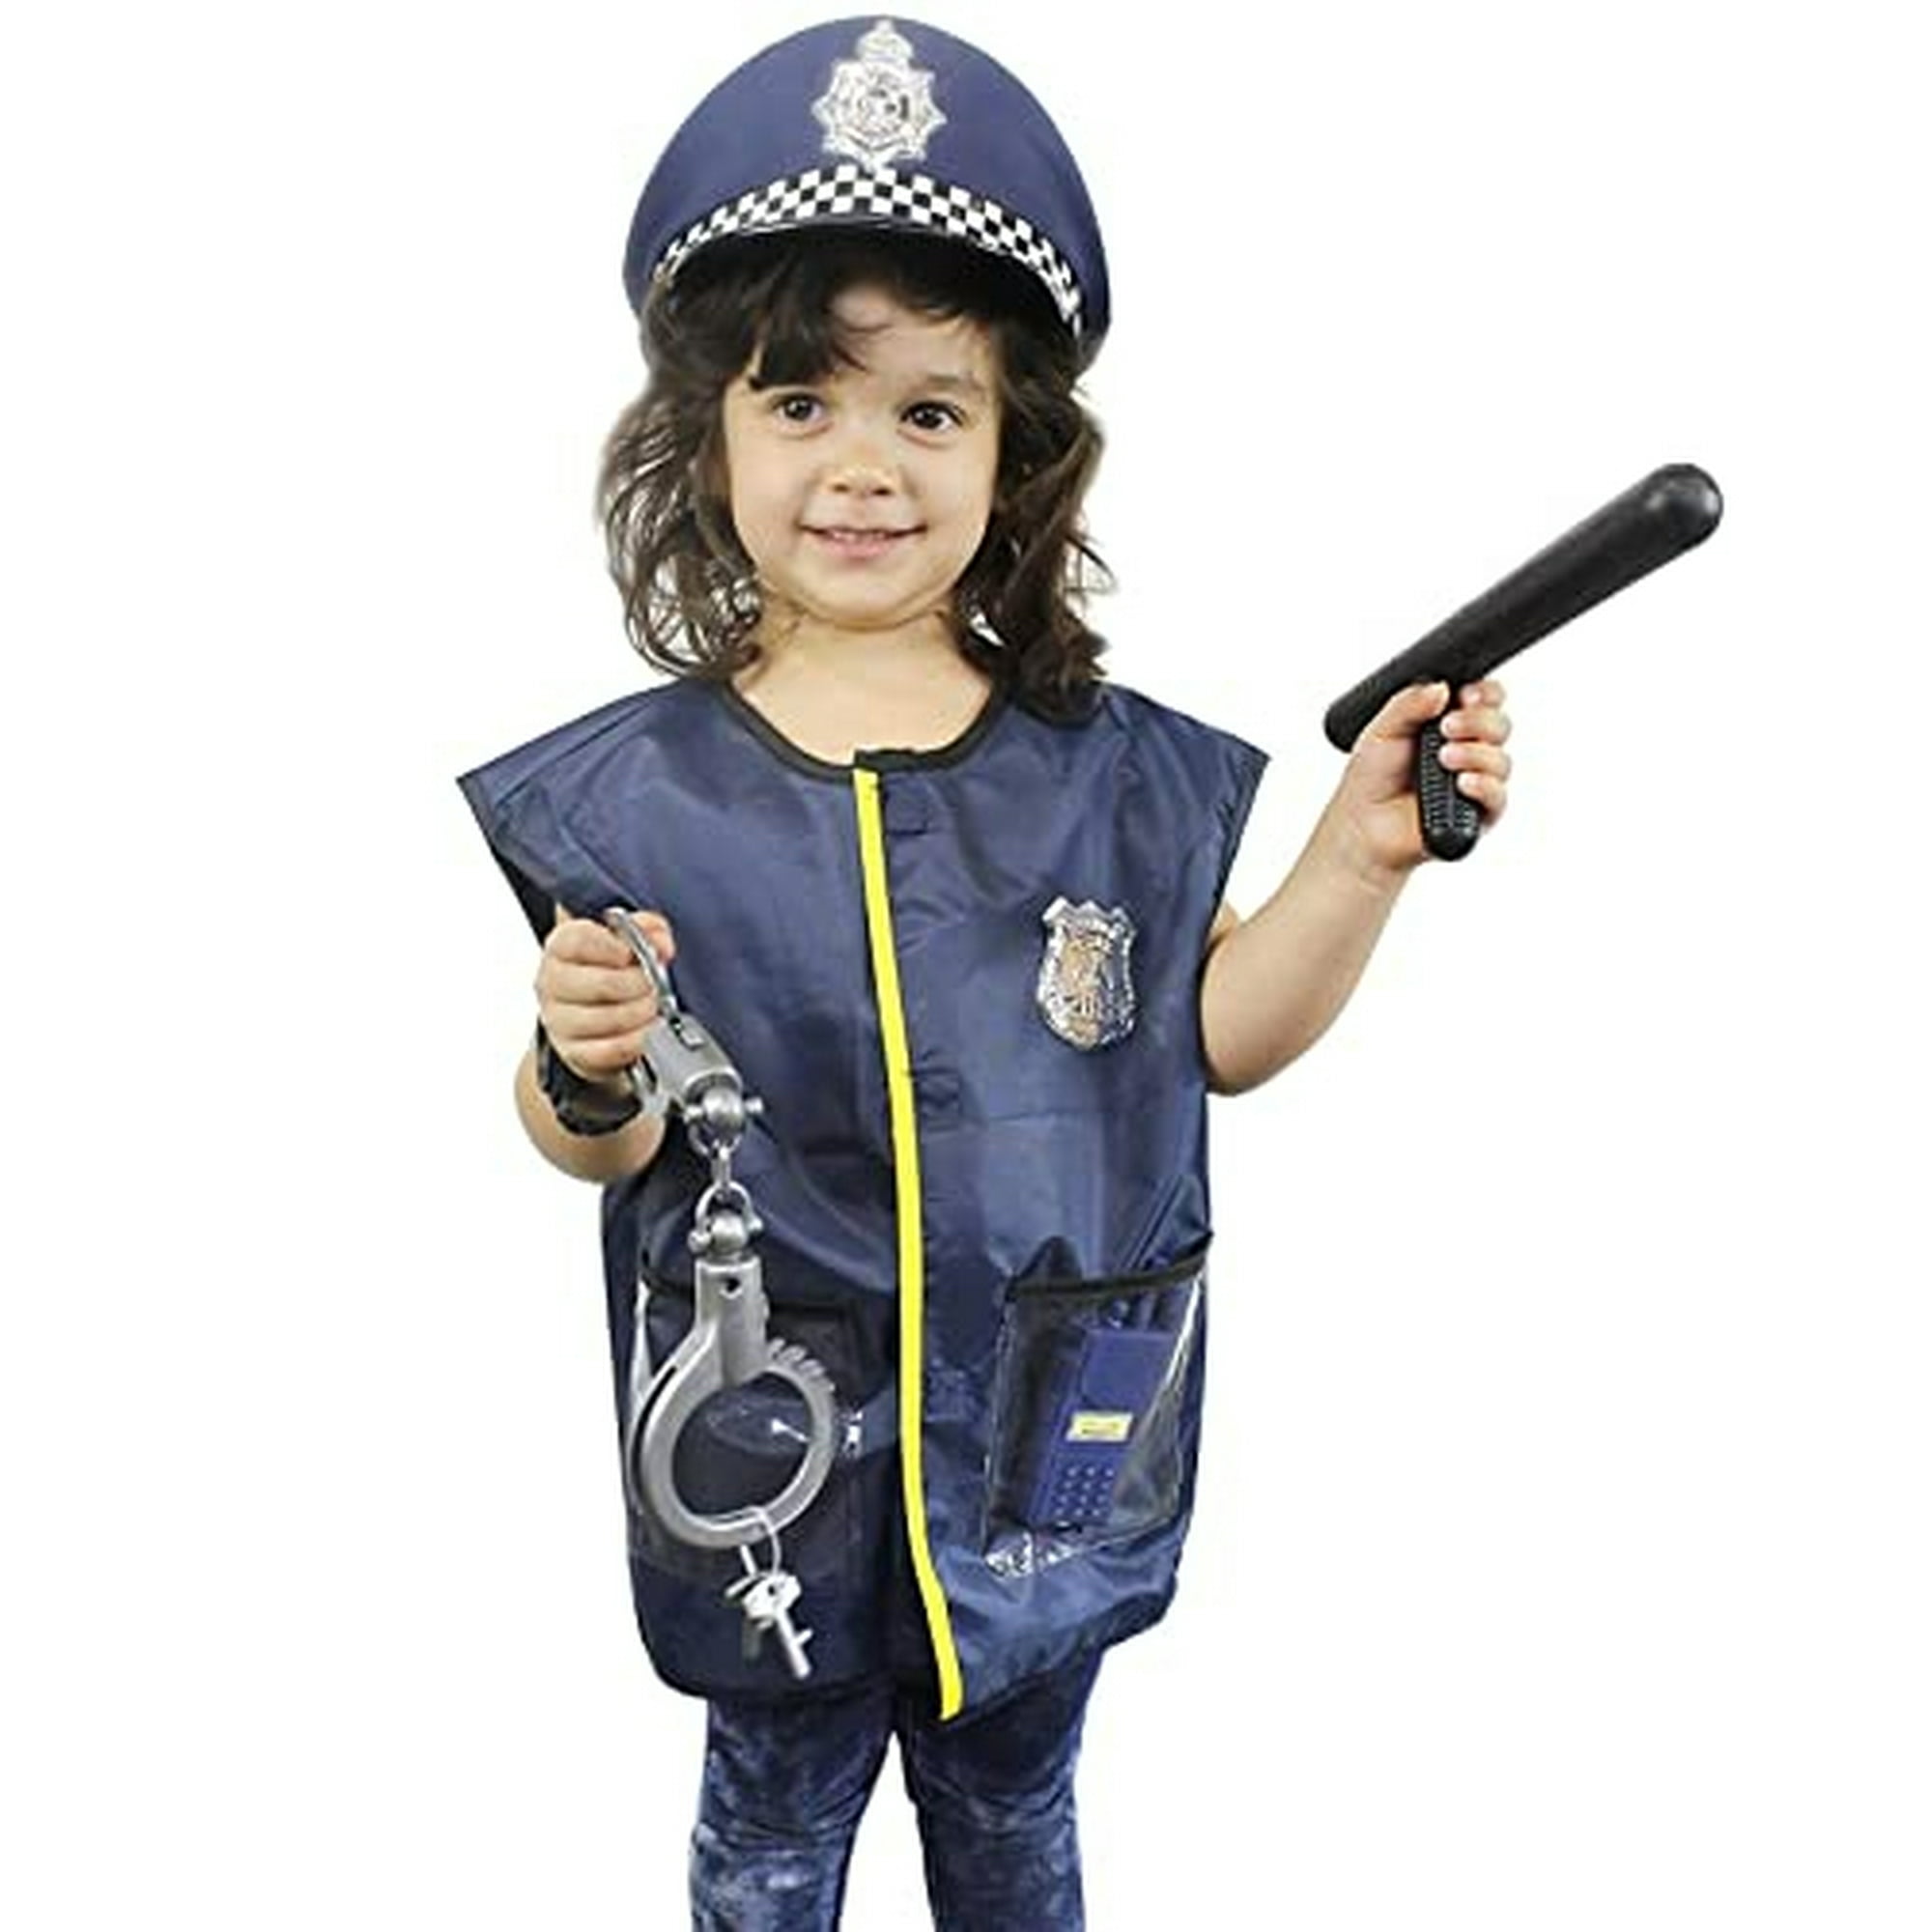 4 piezas oficial de policía Juego de roles disfraces accesorios